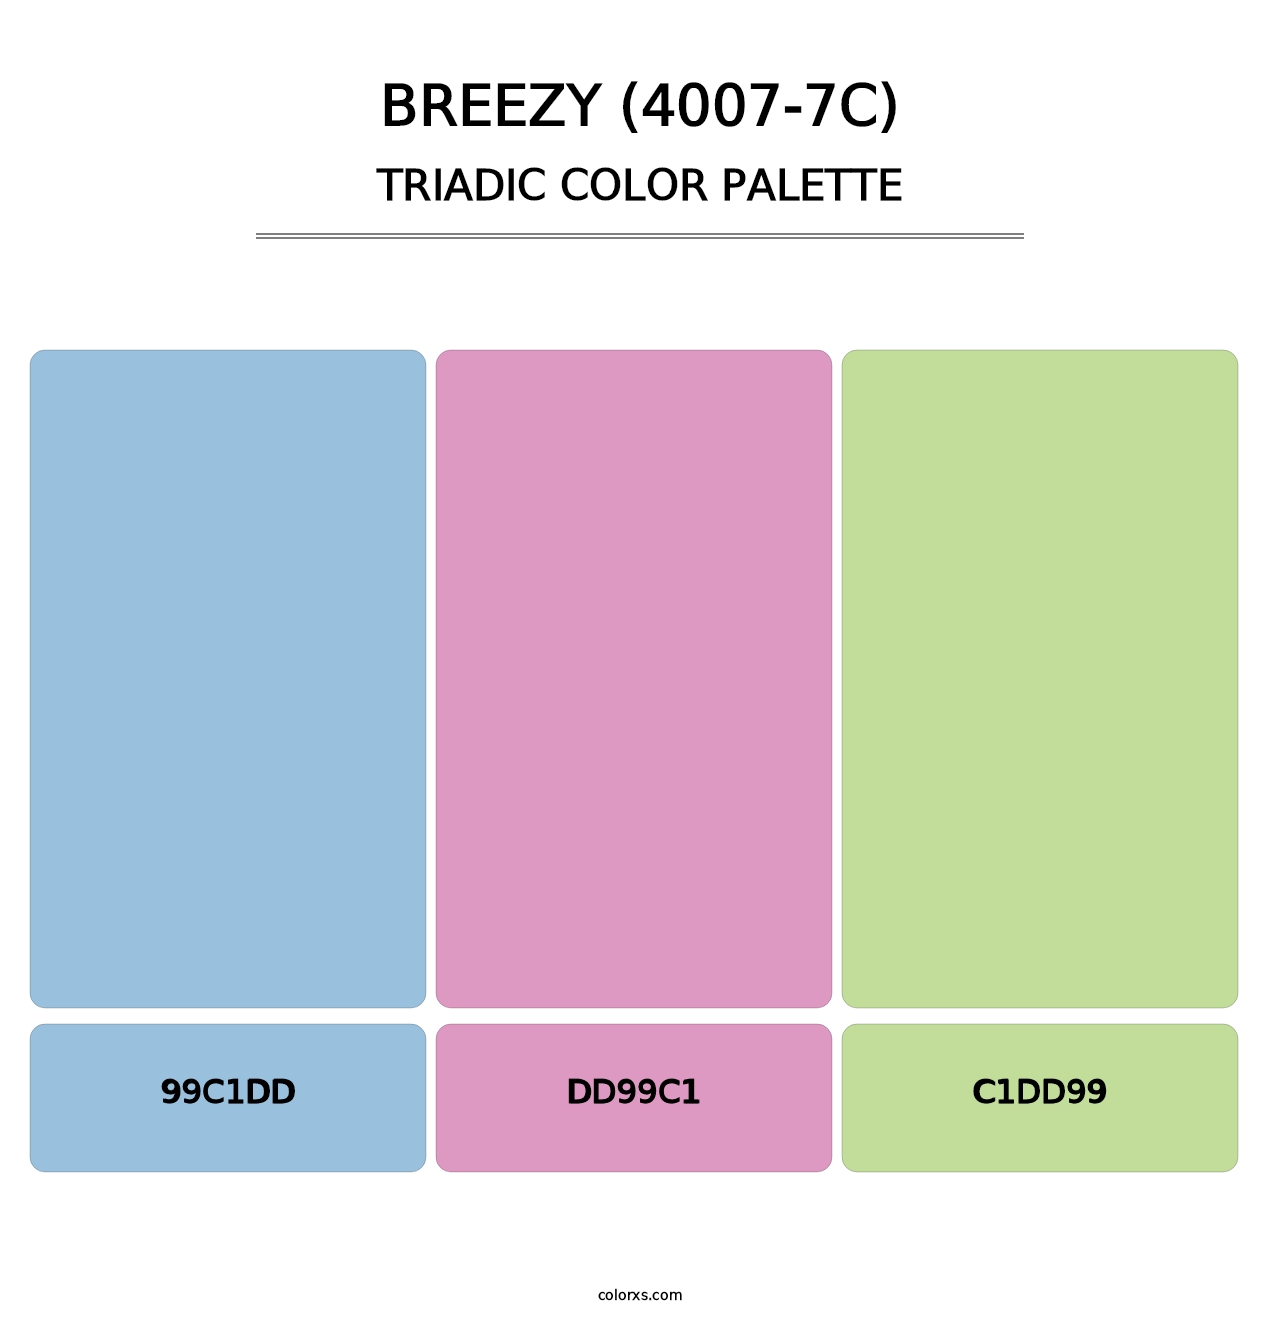 Breezy (4007-7C) - Triadic Color Palette